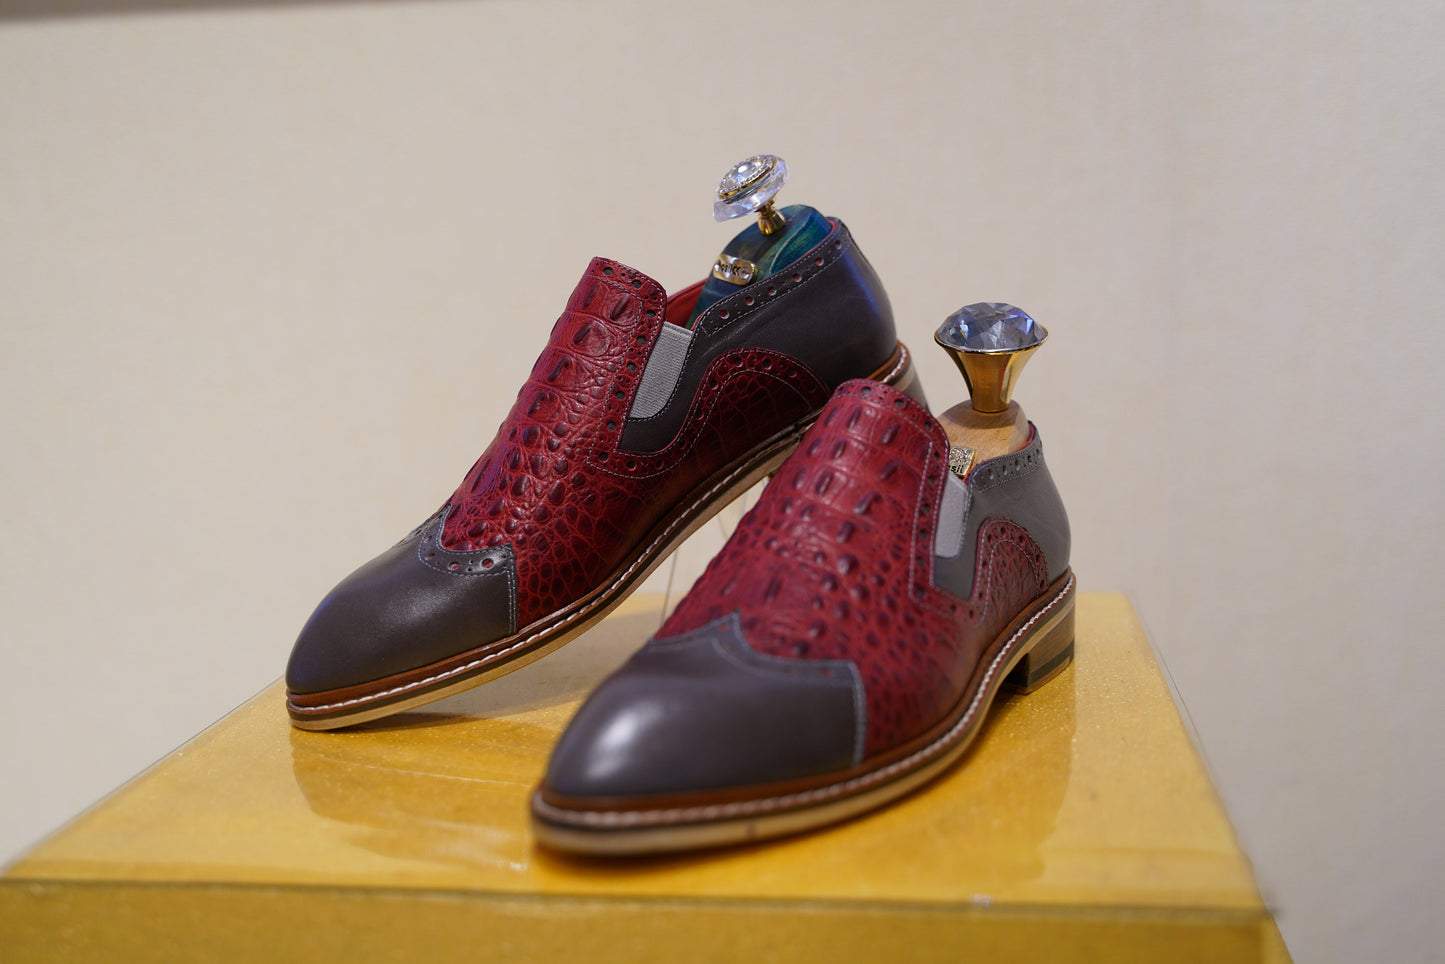 Red Genuine Leather Alligator Men Loafer Custom Made To Order Men Shoe /Stylish Loafer